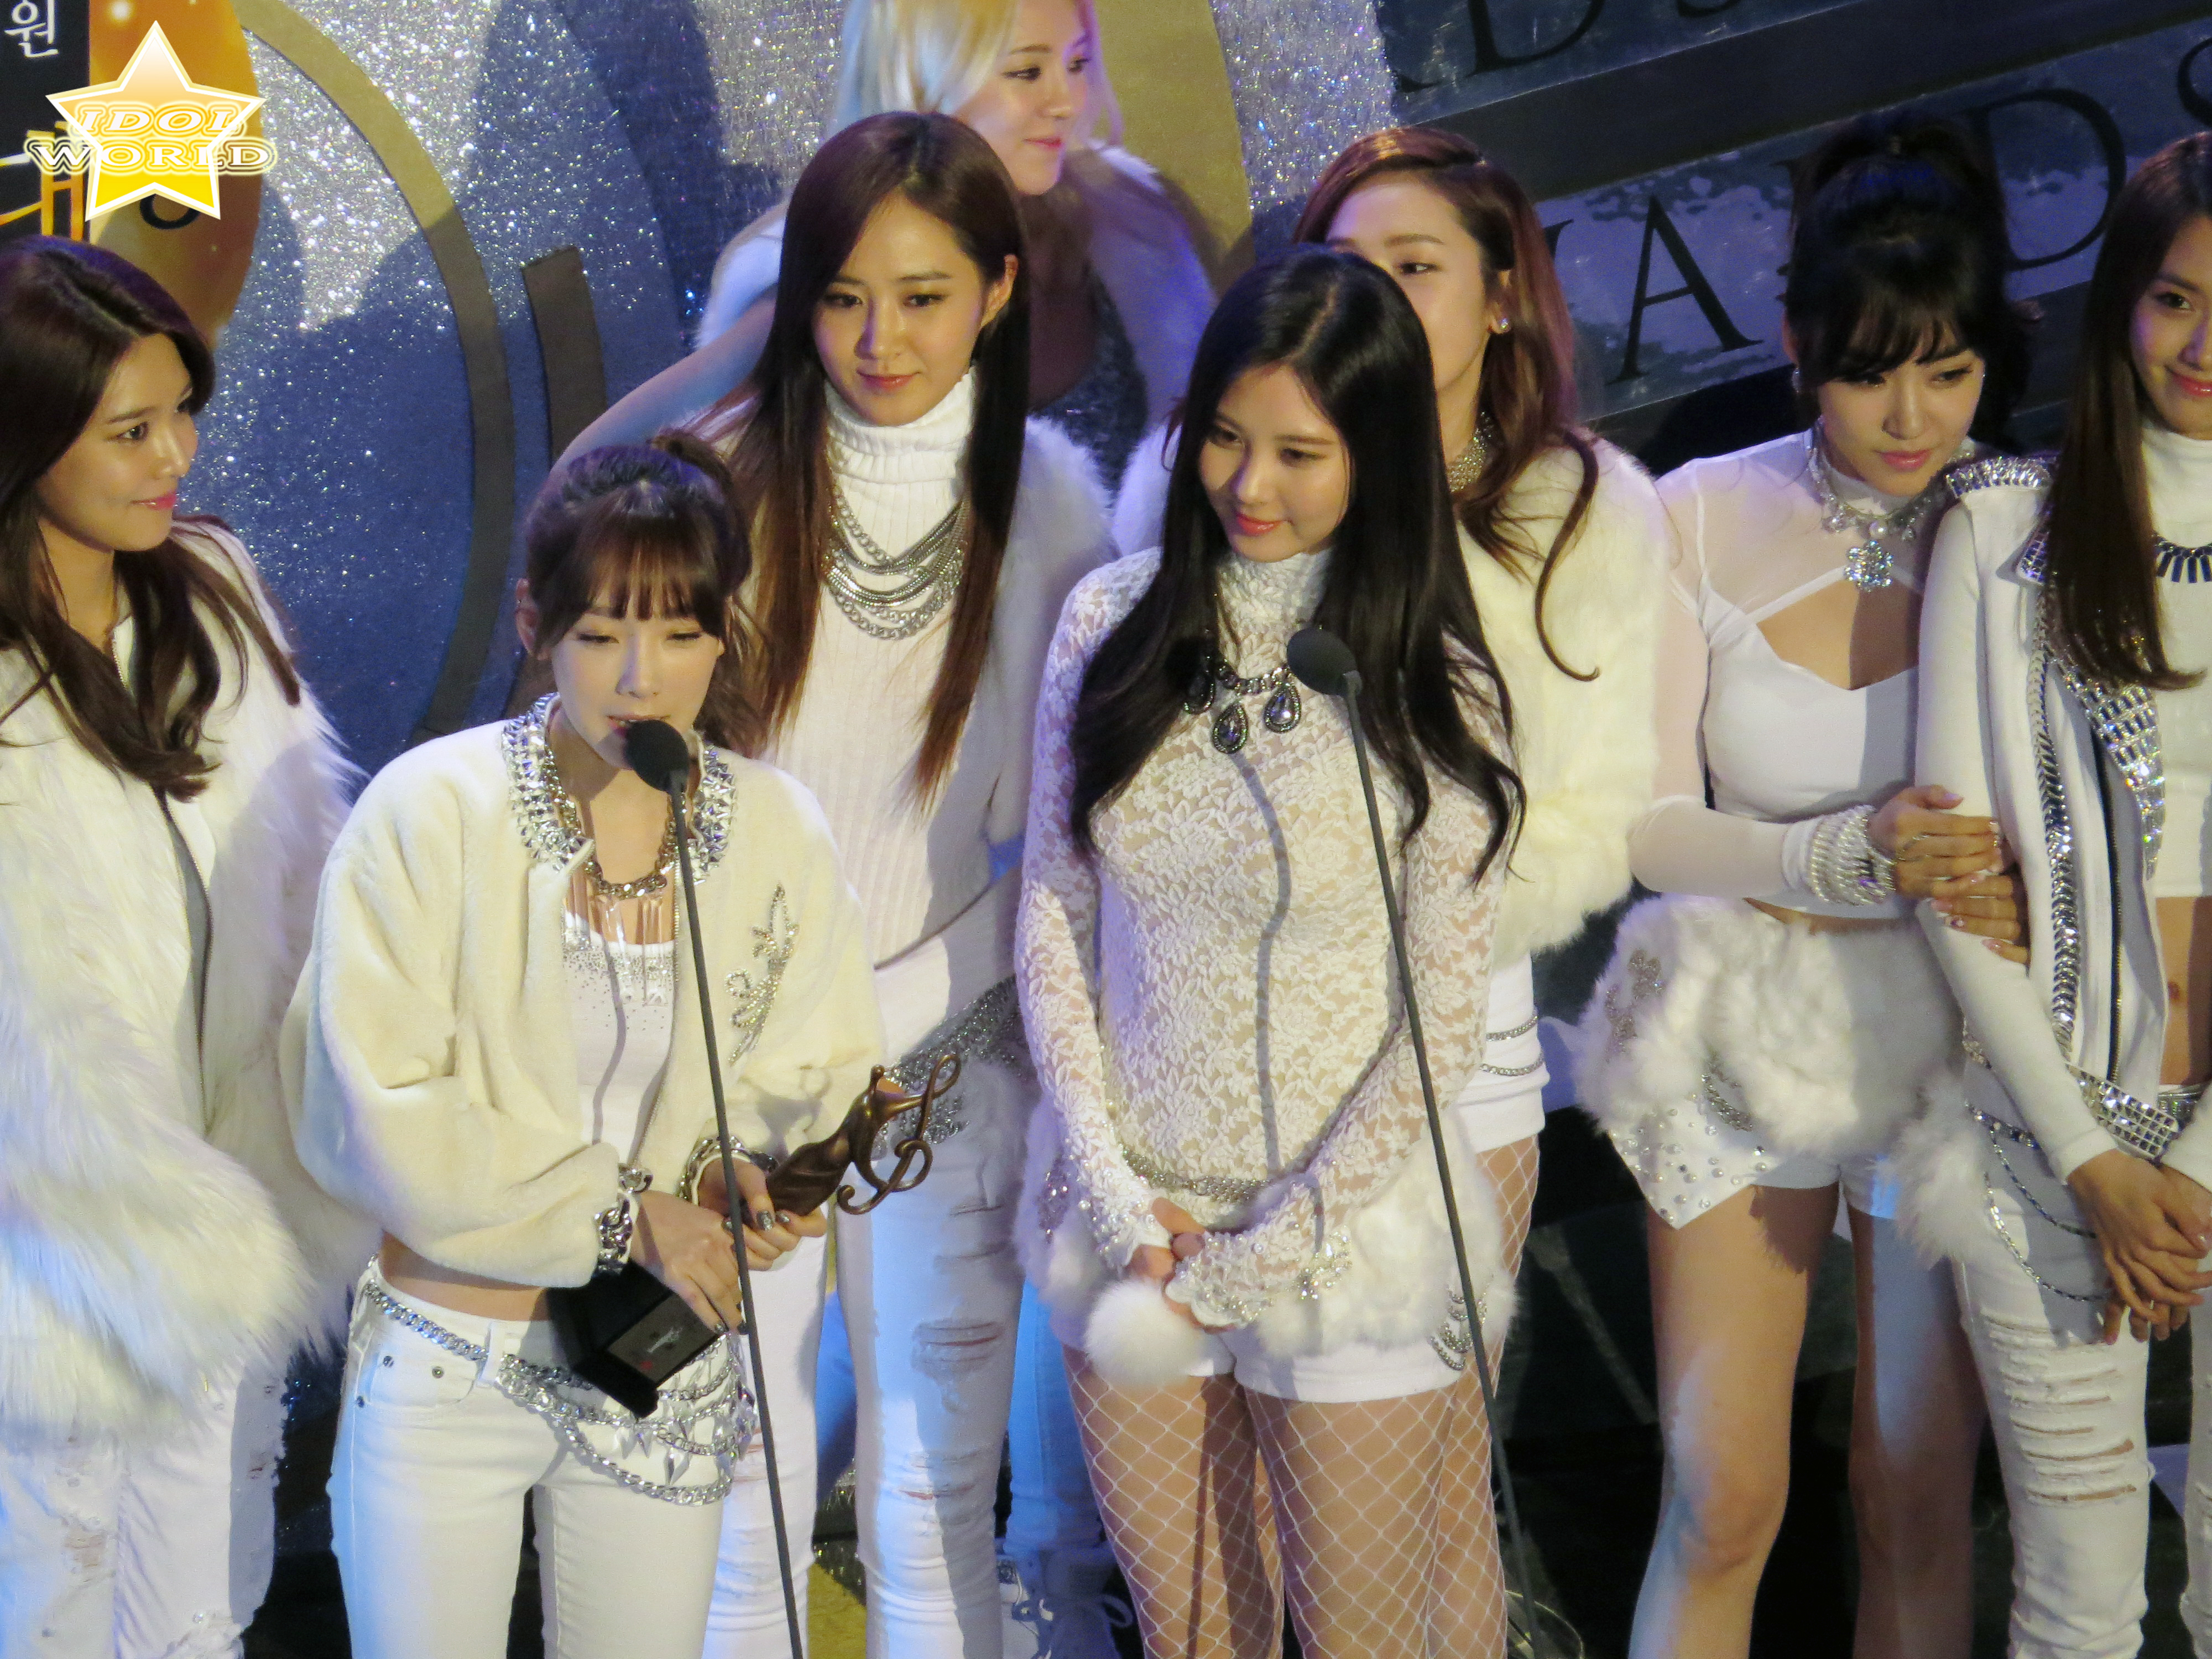 [PIC][23-01-2014]SNSD tham dự "23rd Seoul Music Awards" vào tối nay - Page 3 2467FF4152E2574709F40A